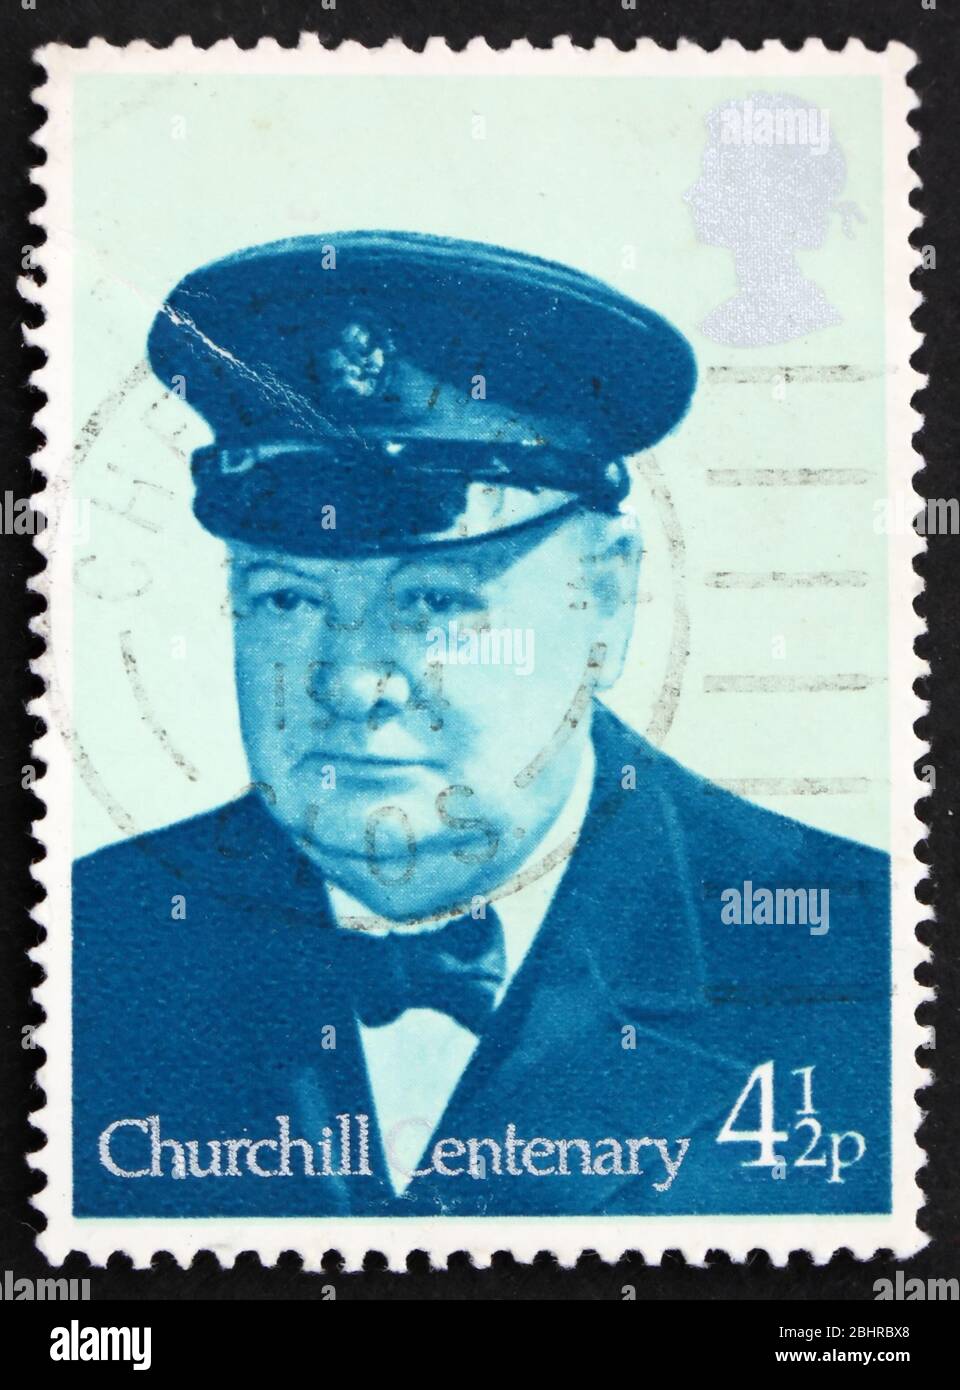 GROSSBRITANNIEN – UM 1974: Eine in Großbritannien gedruckte Briefmarke zeigt Sir Winston Spencer Churchill, den britischen Staatsmann, um 1974 Stockfoto